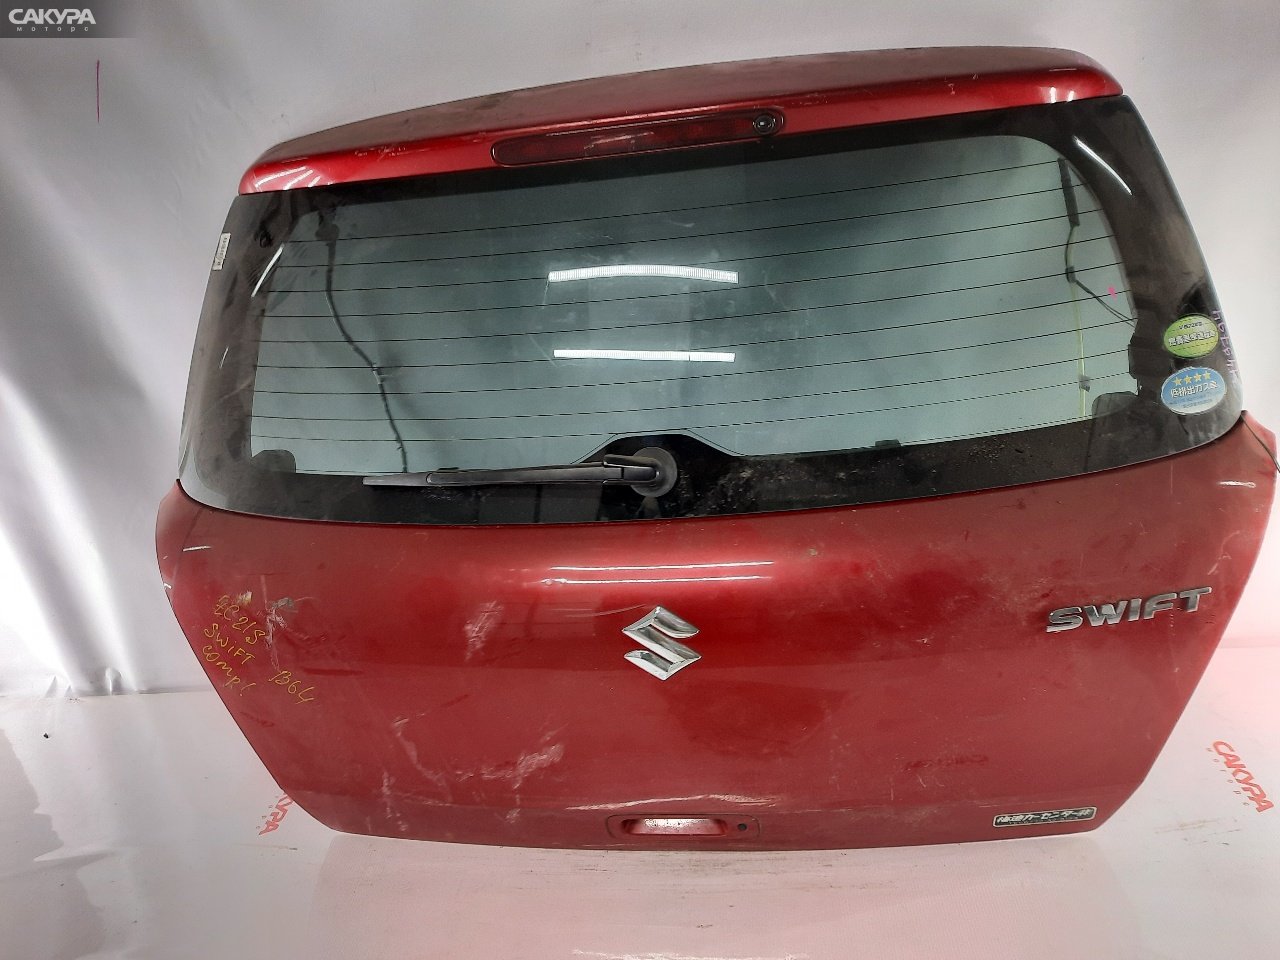 Дверь задняя багажника Suzuki Swift ZC21S M15A: купить в Сакура Красноярск.